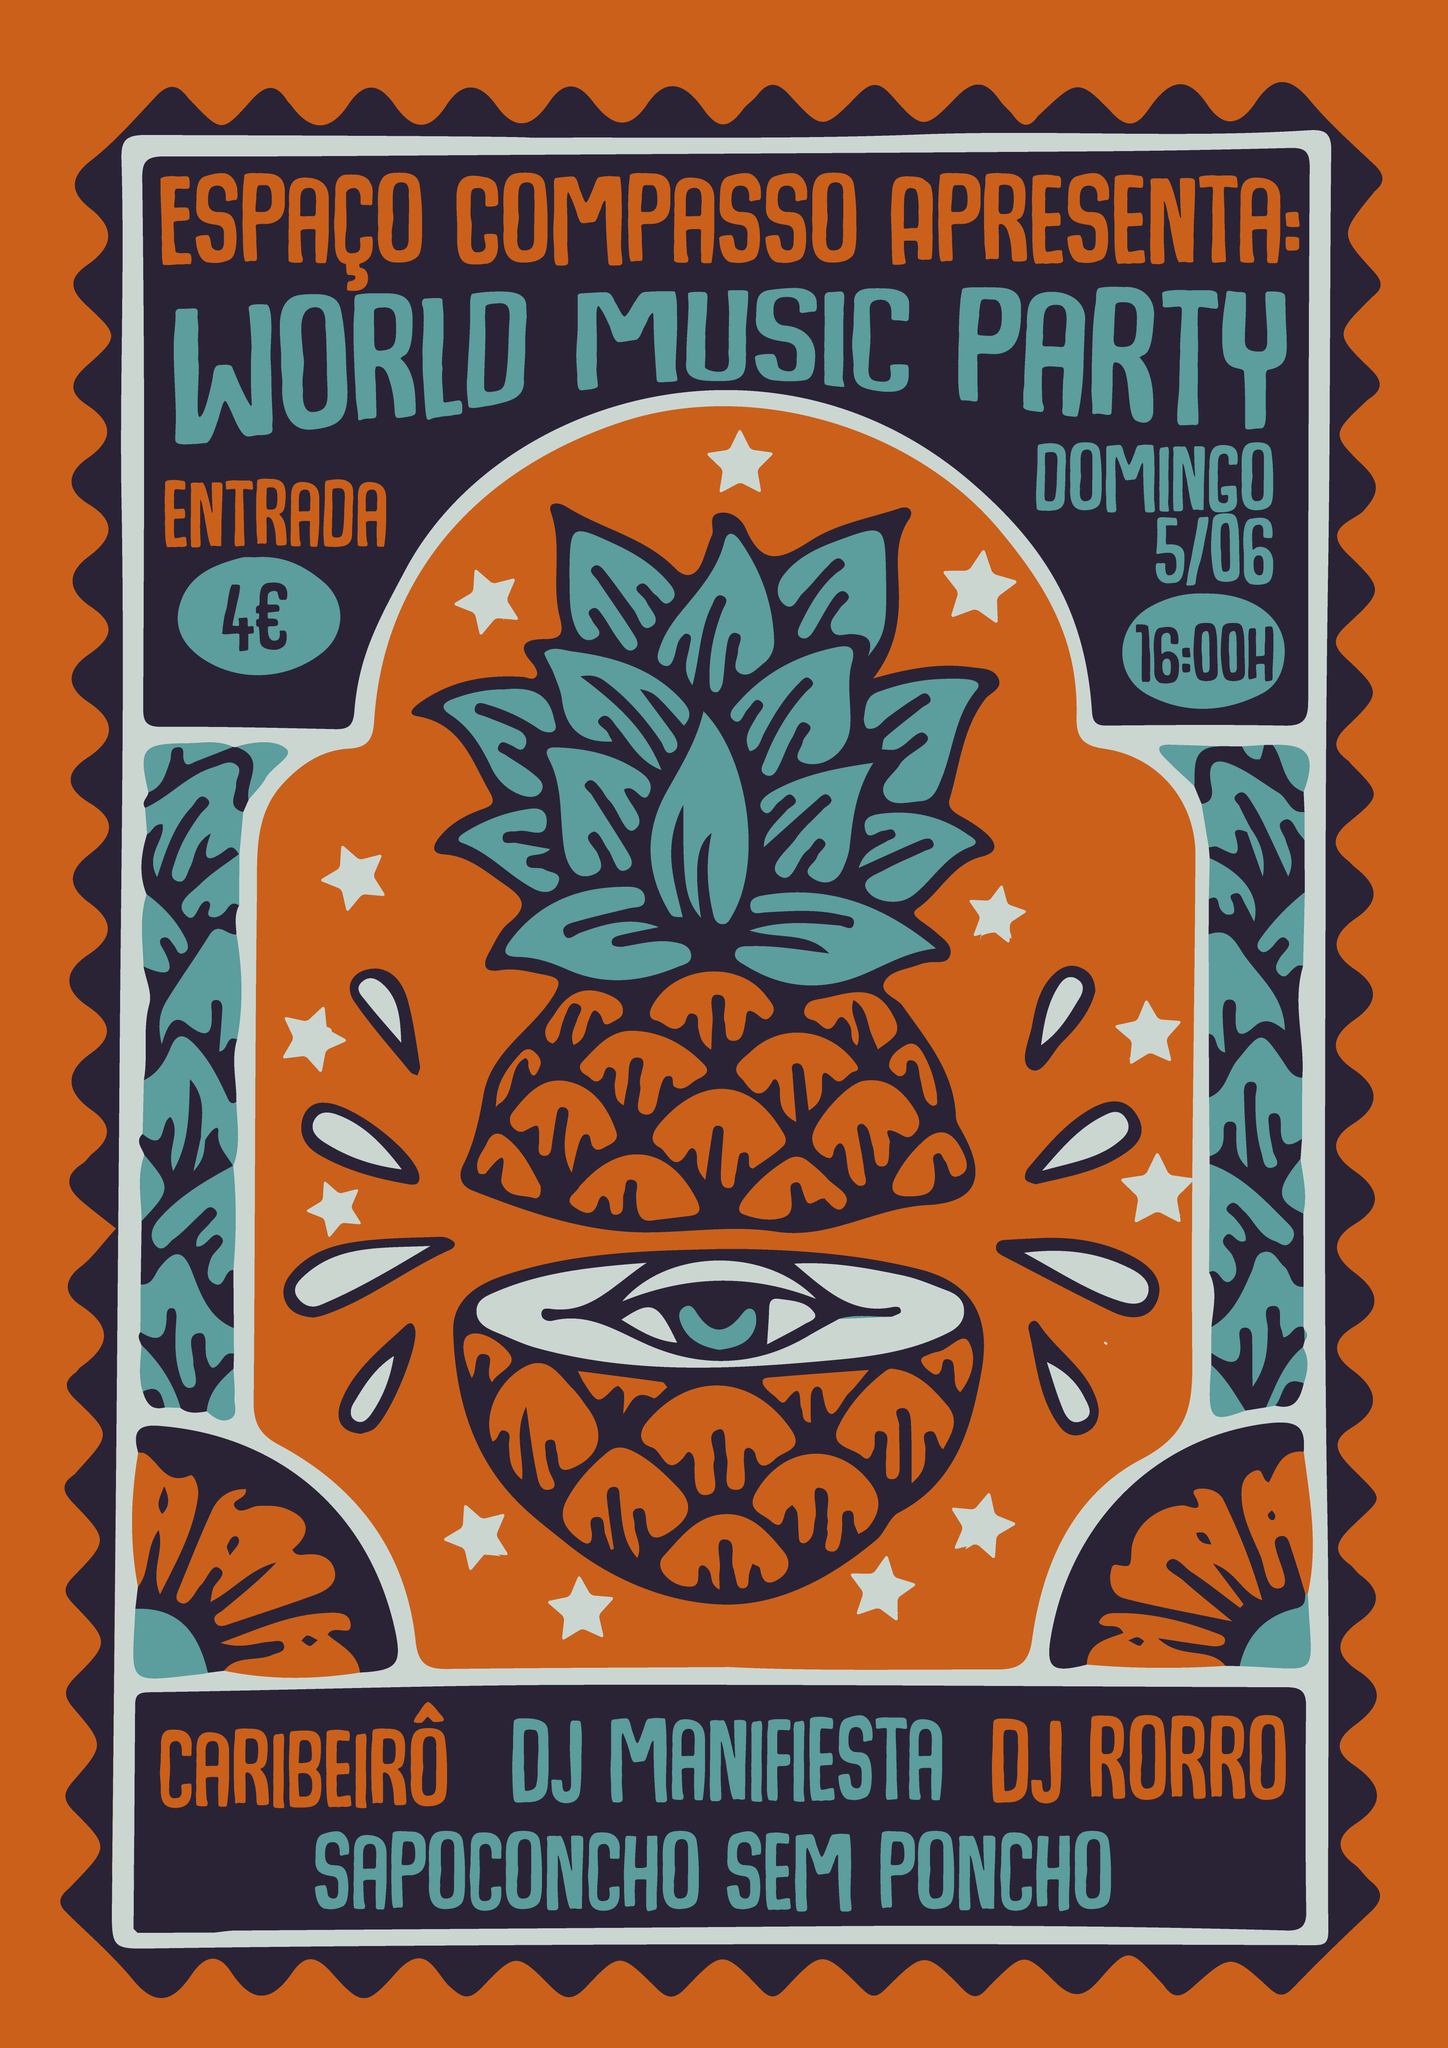 World Music Party - Espaço Compasso